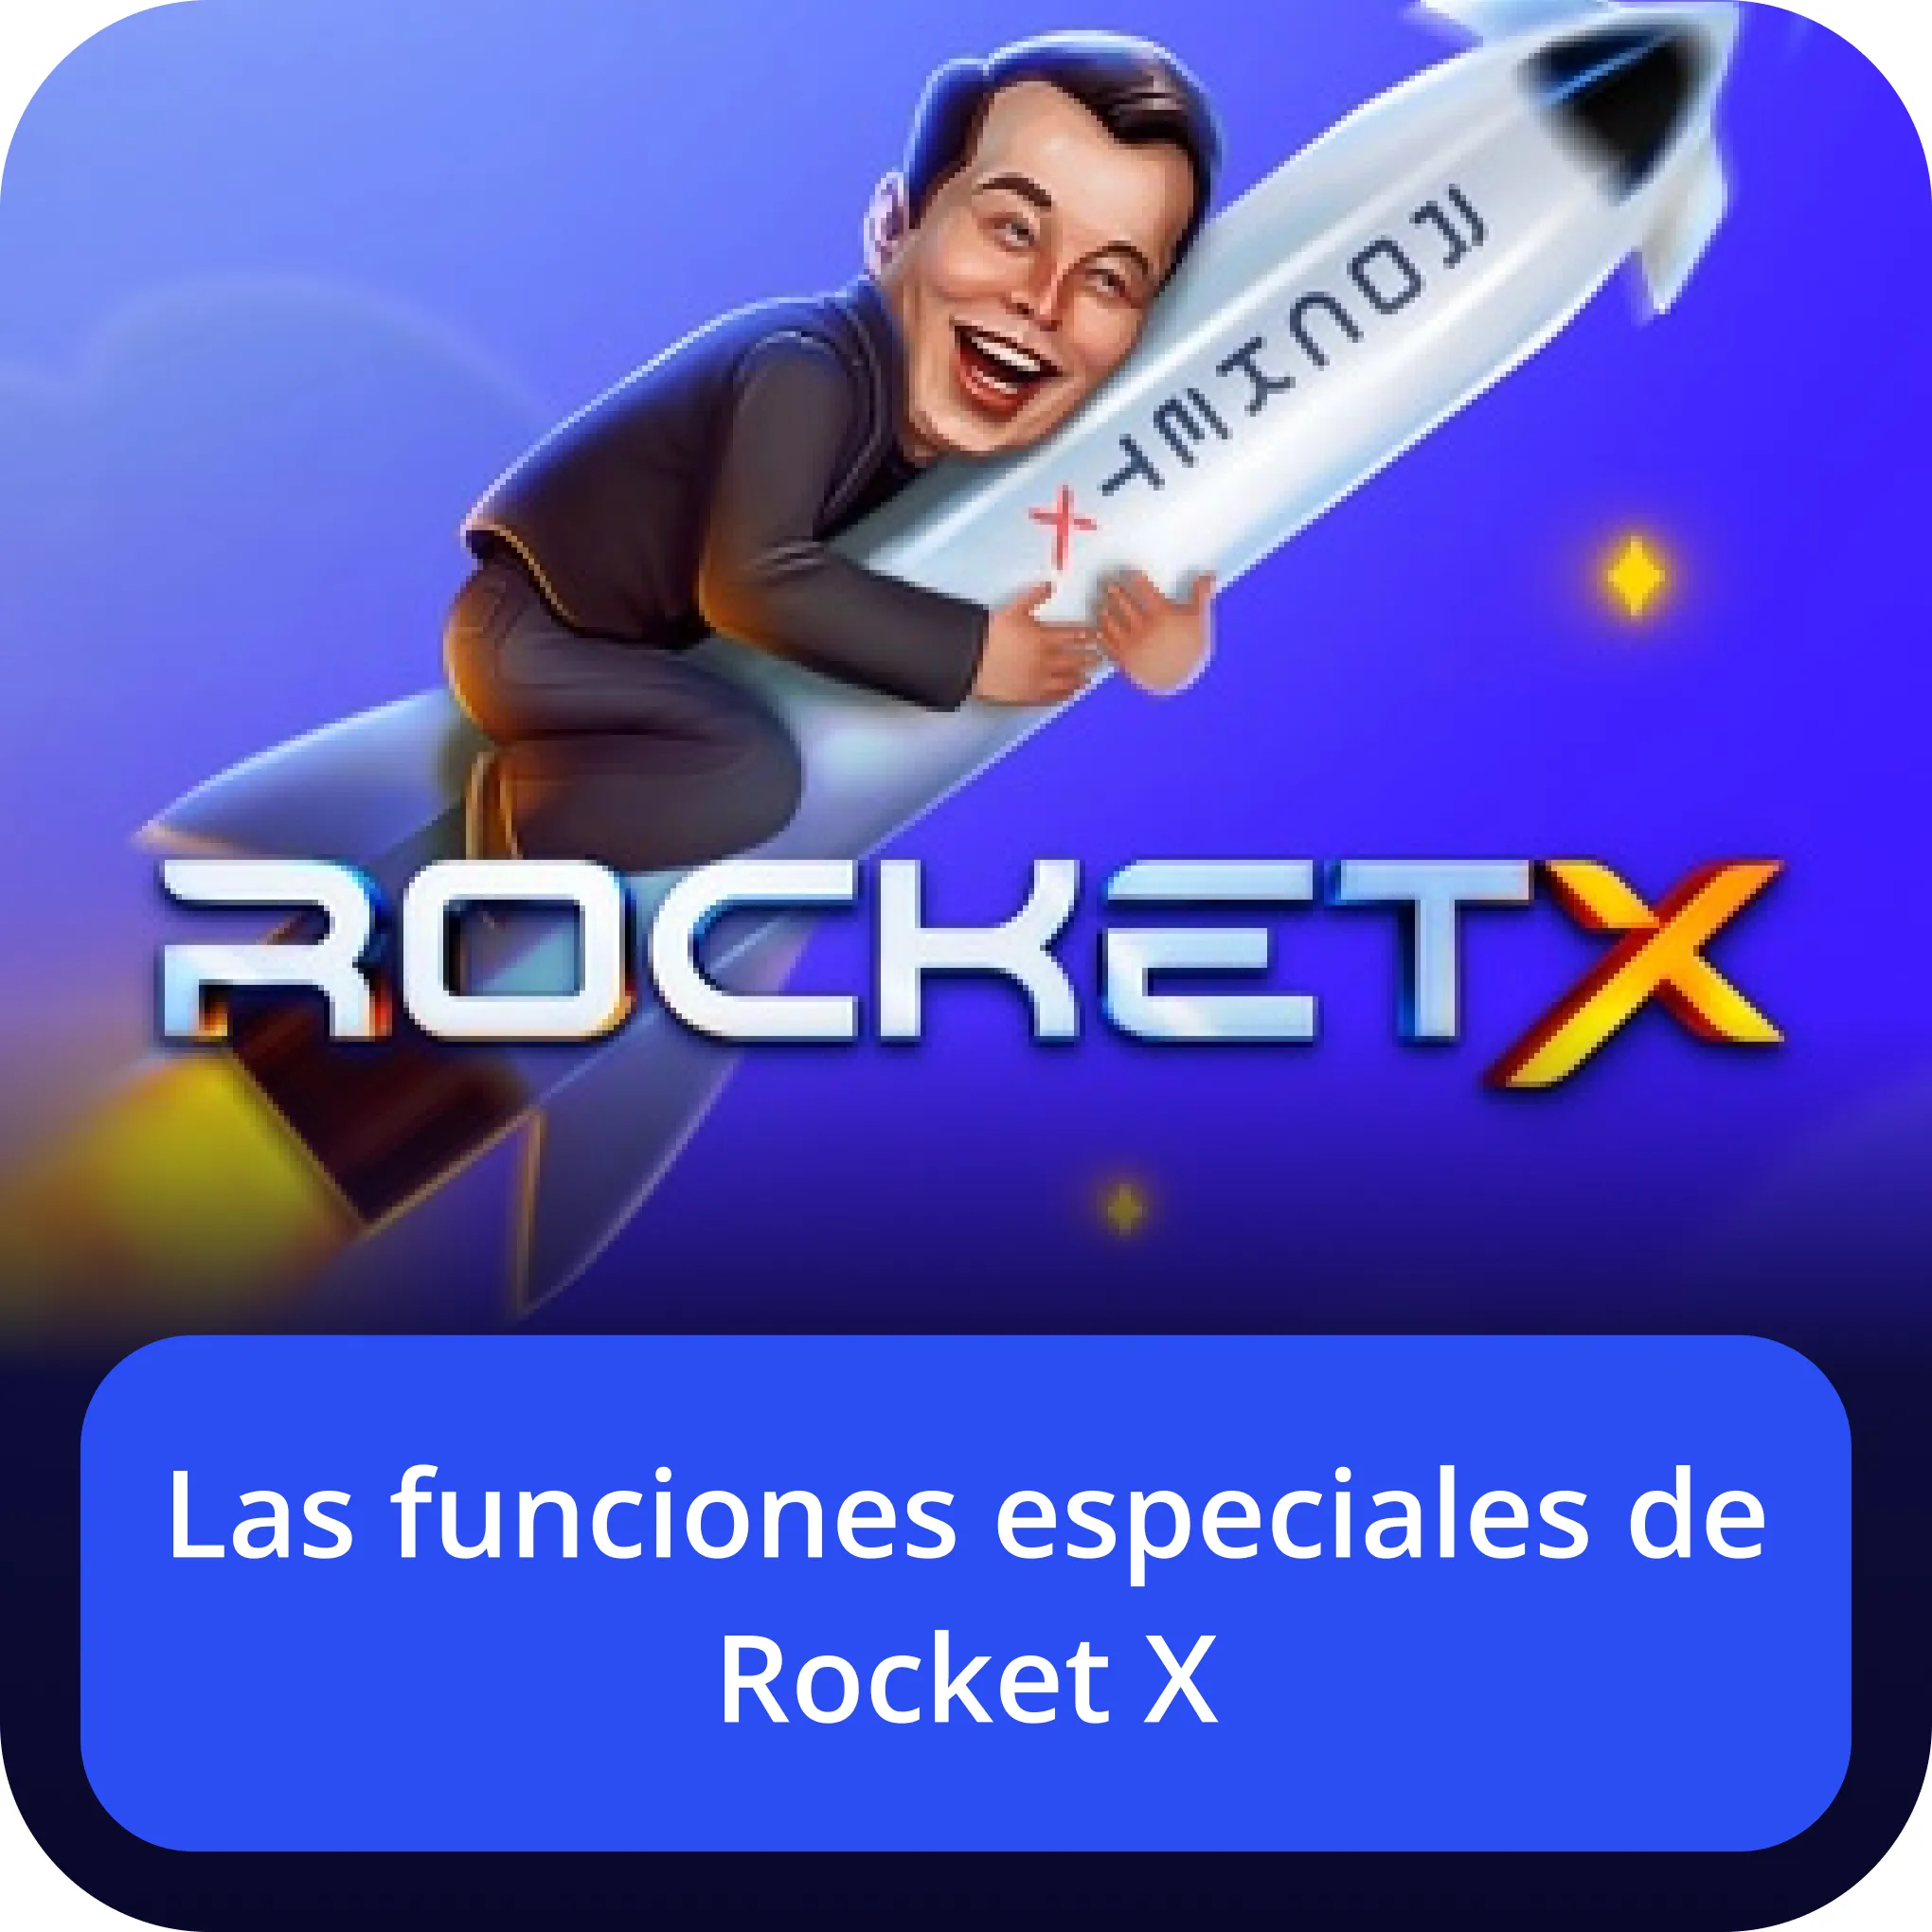 funciones especiales de rocket x